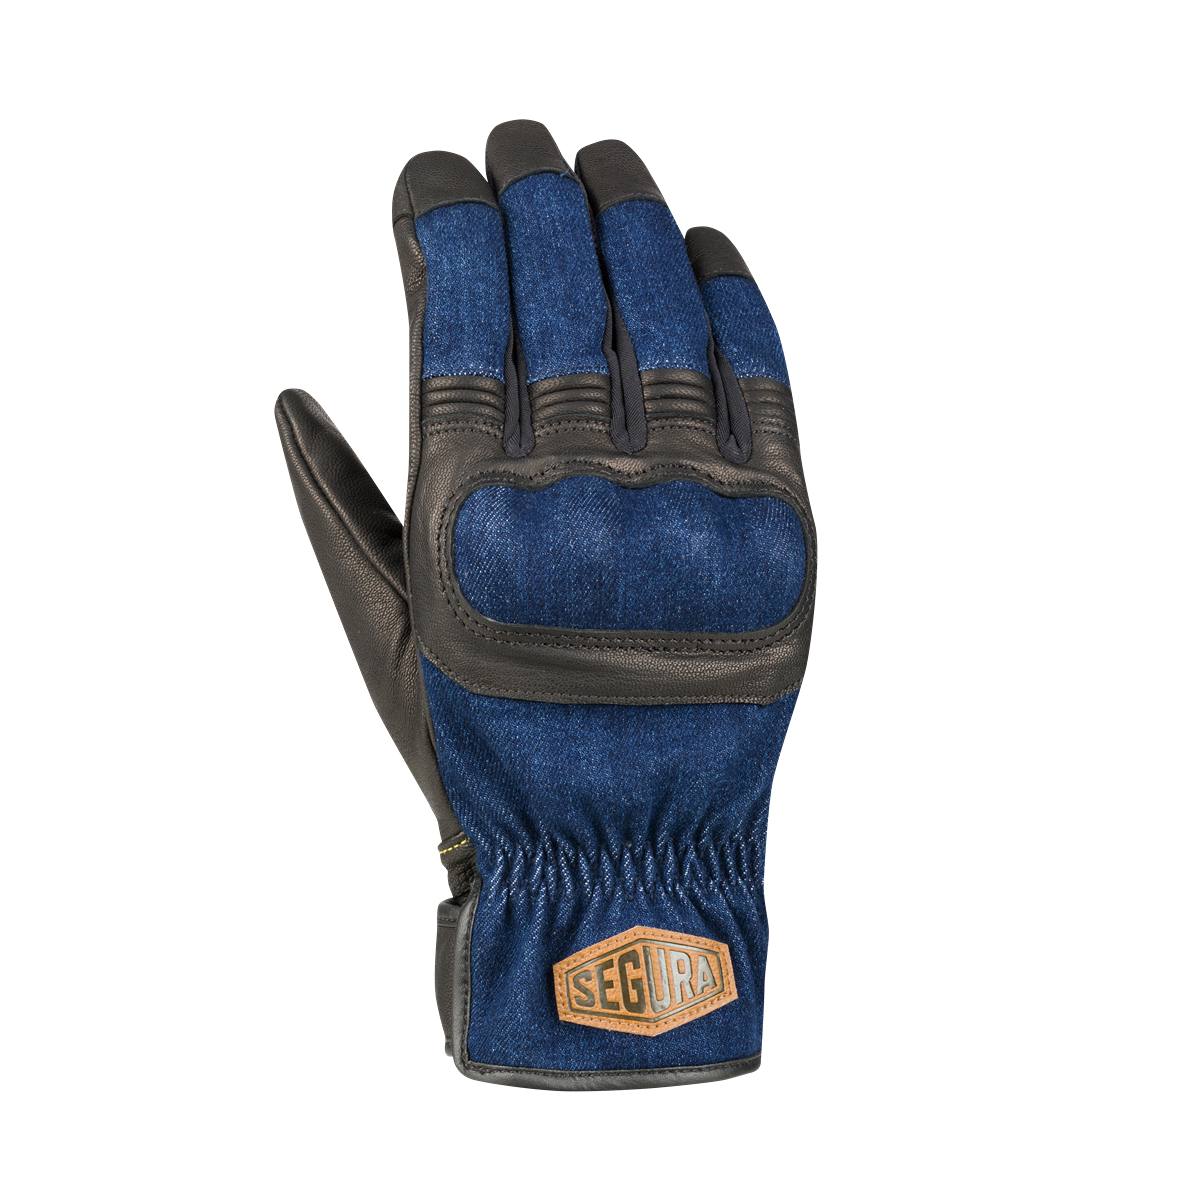 Image of Segura Hunky Gloves Black Blue Size T9 EN